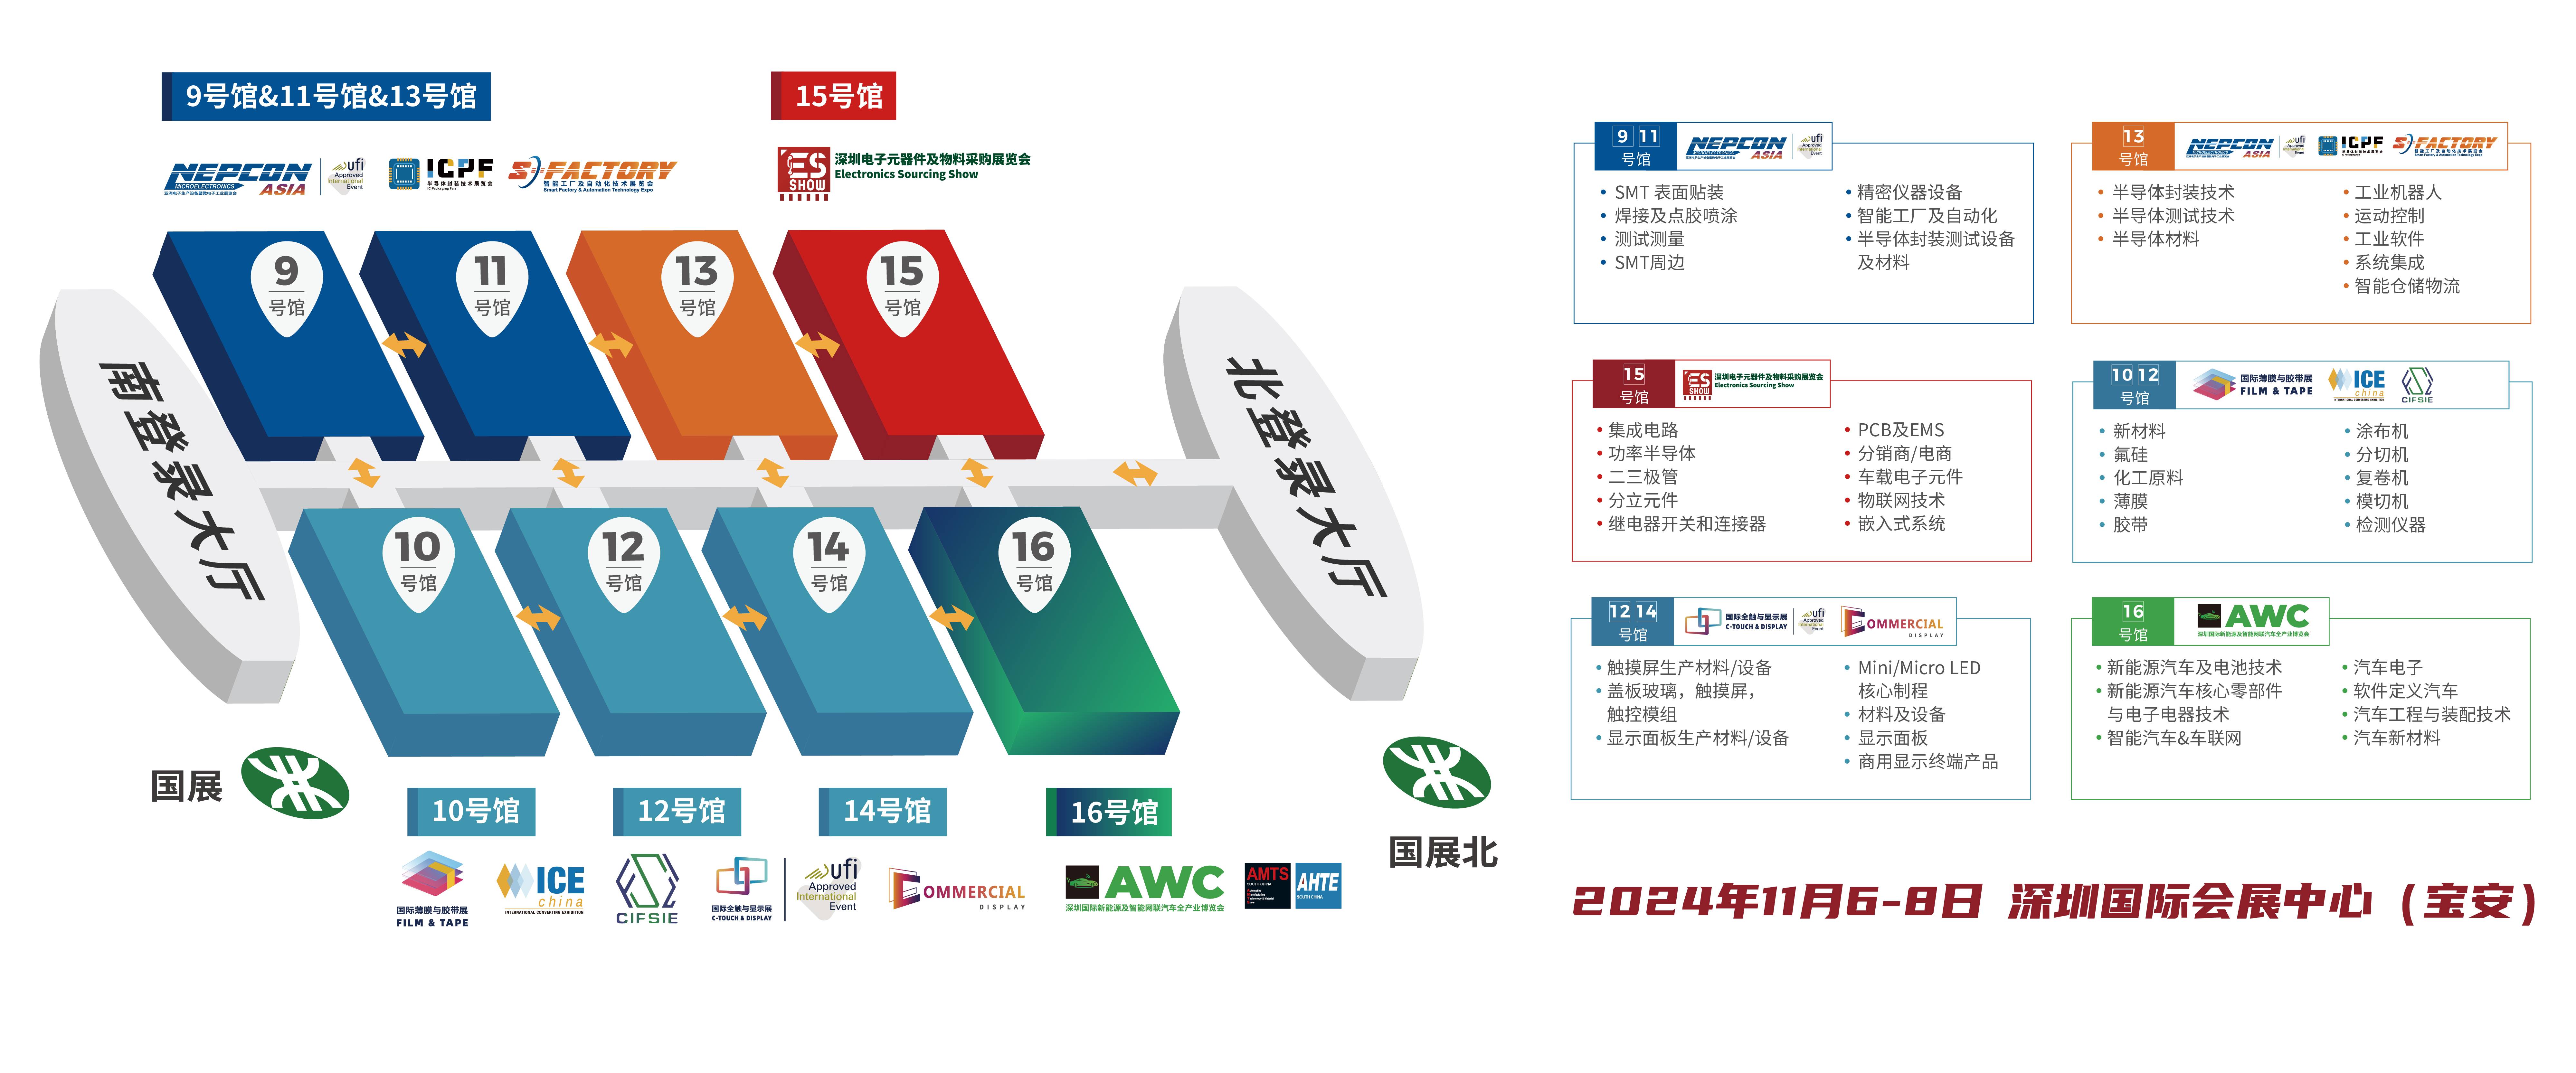 深圳电子展 华南电子展 PCB 中国电子展 电子元器件